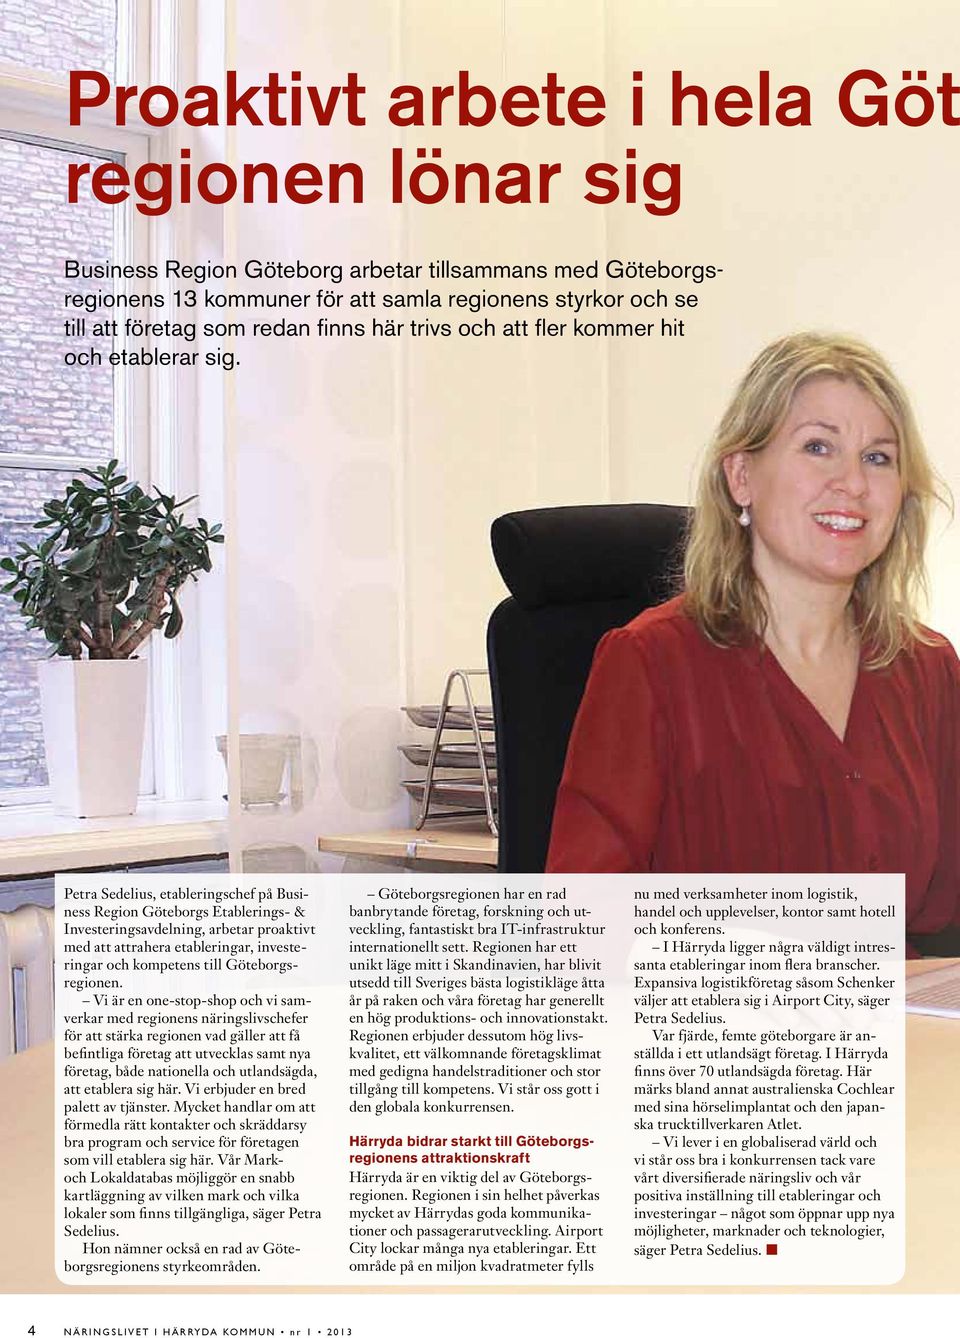 Petra Sedelius, etableringschef på Business Region Göteborgs Etablerings- & Investeringsavdelning, arbetar proaktivt med att attrahera etableringar, investeringar och kompetens till Göteborgsregionen.